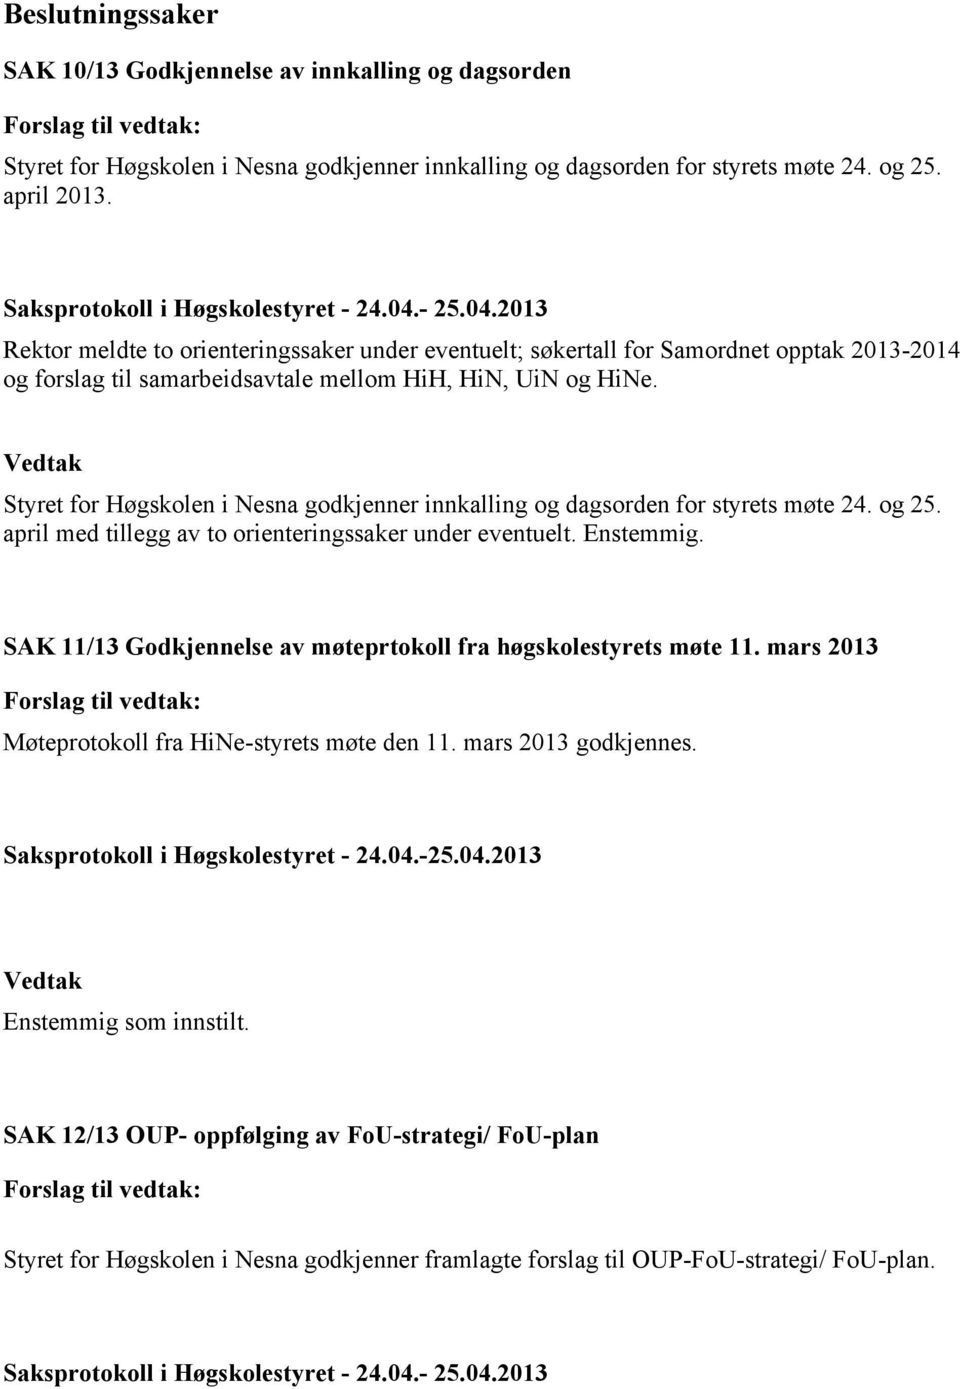 Styret for Høgskolen i Nesna godkjenner innkalling og dagsorden for styrets møte 24. og 25. april med tillegg av to orienteringssaker under eventuelt. Enstemmig.